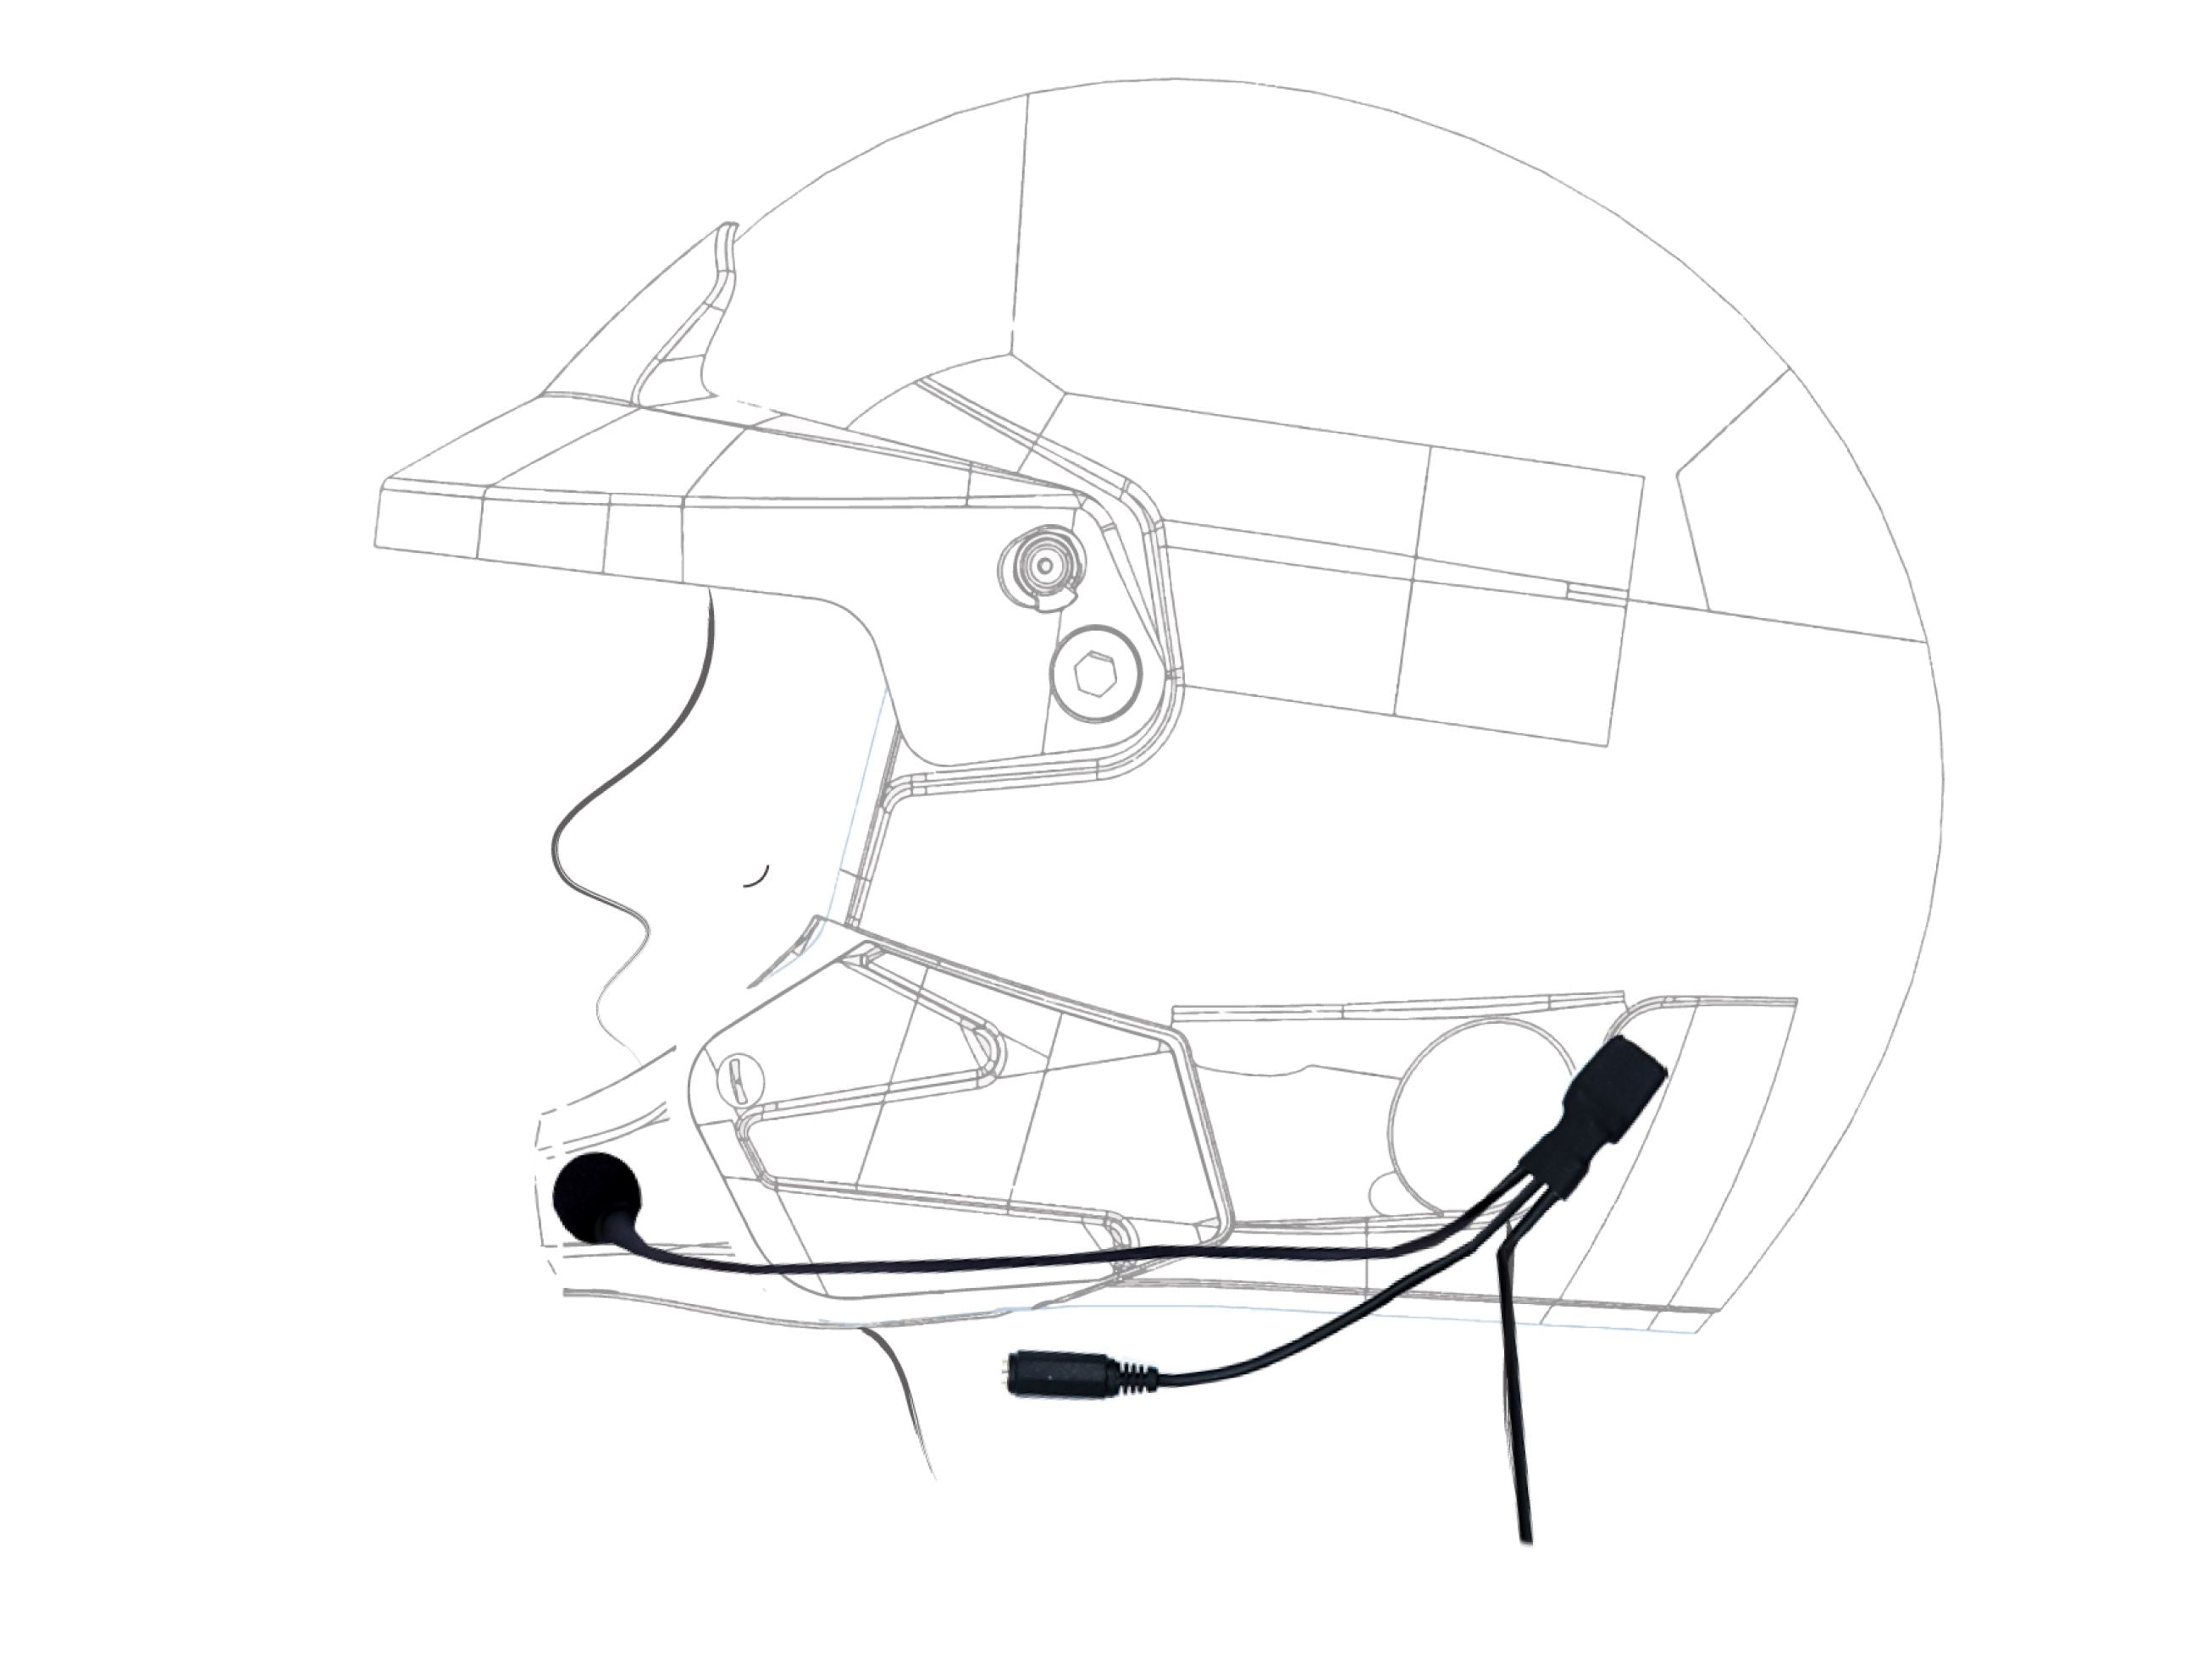 ZERONOISE 6300004 Radio helmet kit for Jet helmet, Male Nexus 4 PIN, Microphone Flex Boom, with Earcups Photo-0 